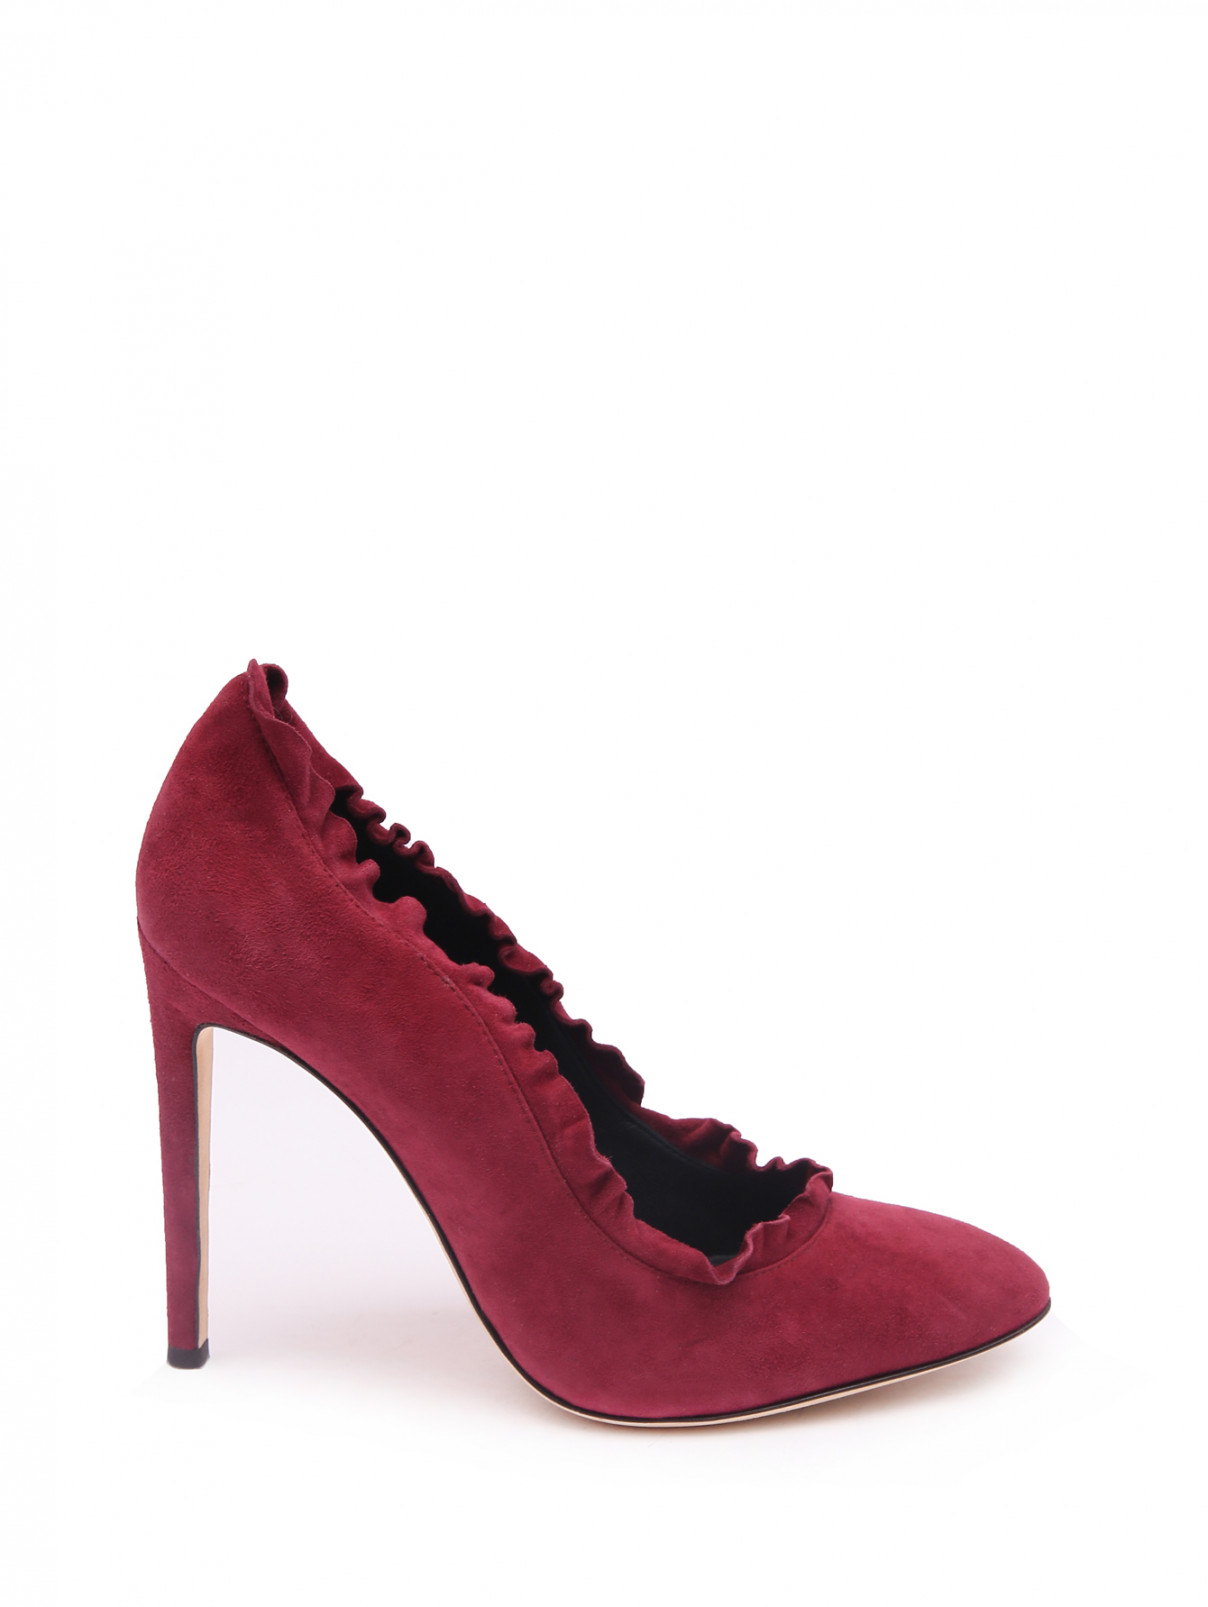 Туфли из замши на шпильке Giuseppe Zanotti  –  Общий вид  – Цвет:  Красный